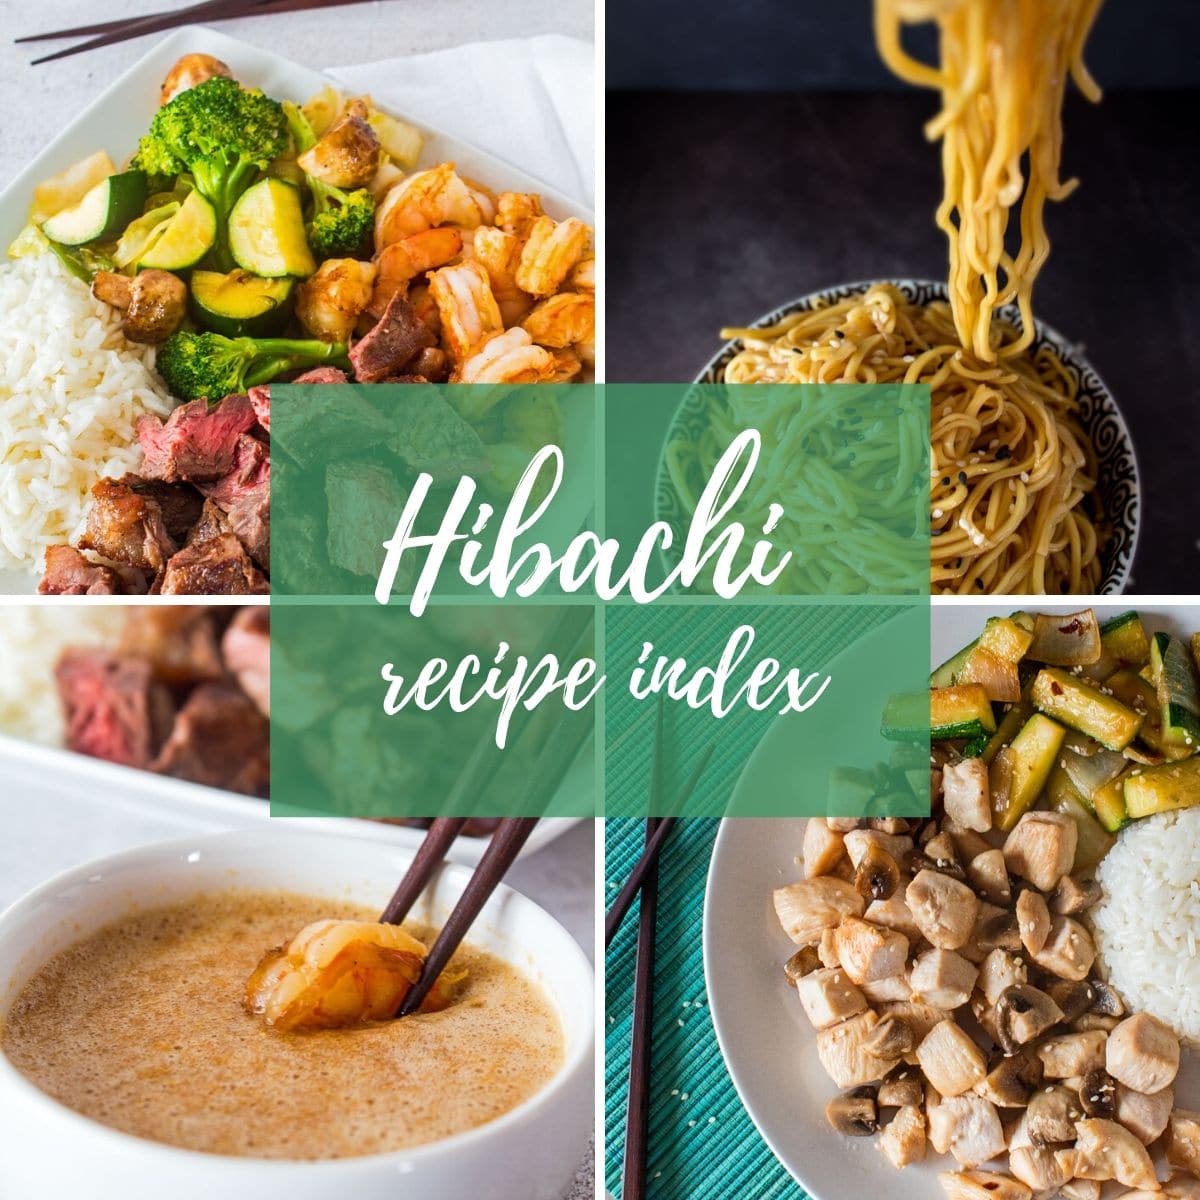 četvrtasta slika u kolažu koja prikazuje četiri moja recepta za hibachi - odrezak i škampi, rezanci, umak za umakanje i predjelo od piletine sa zelenim slojem za tekst "Indeks recepata za Hibachi"